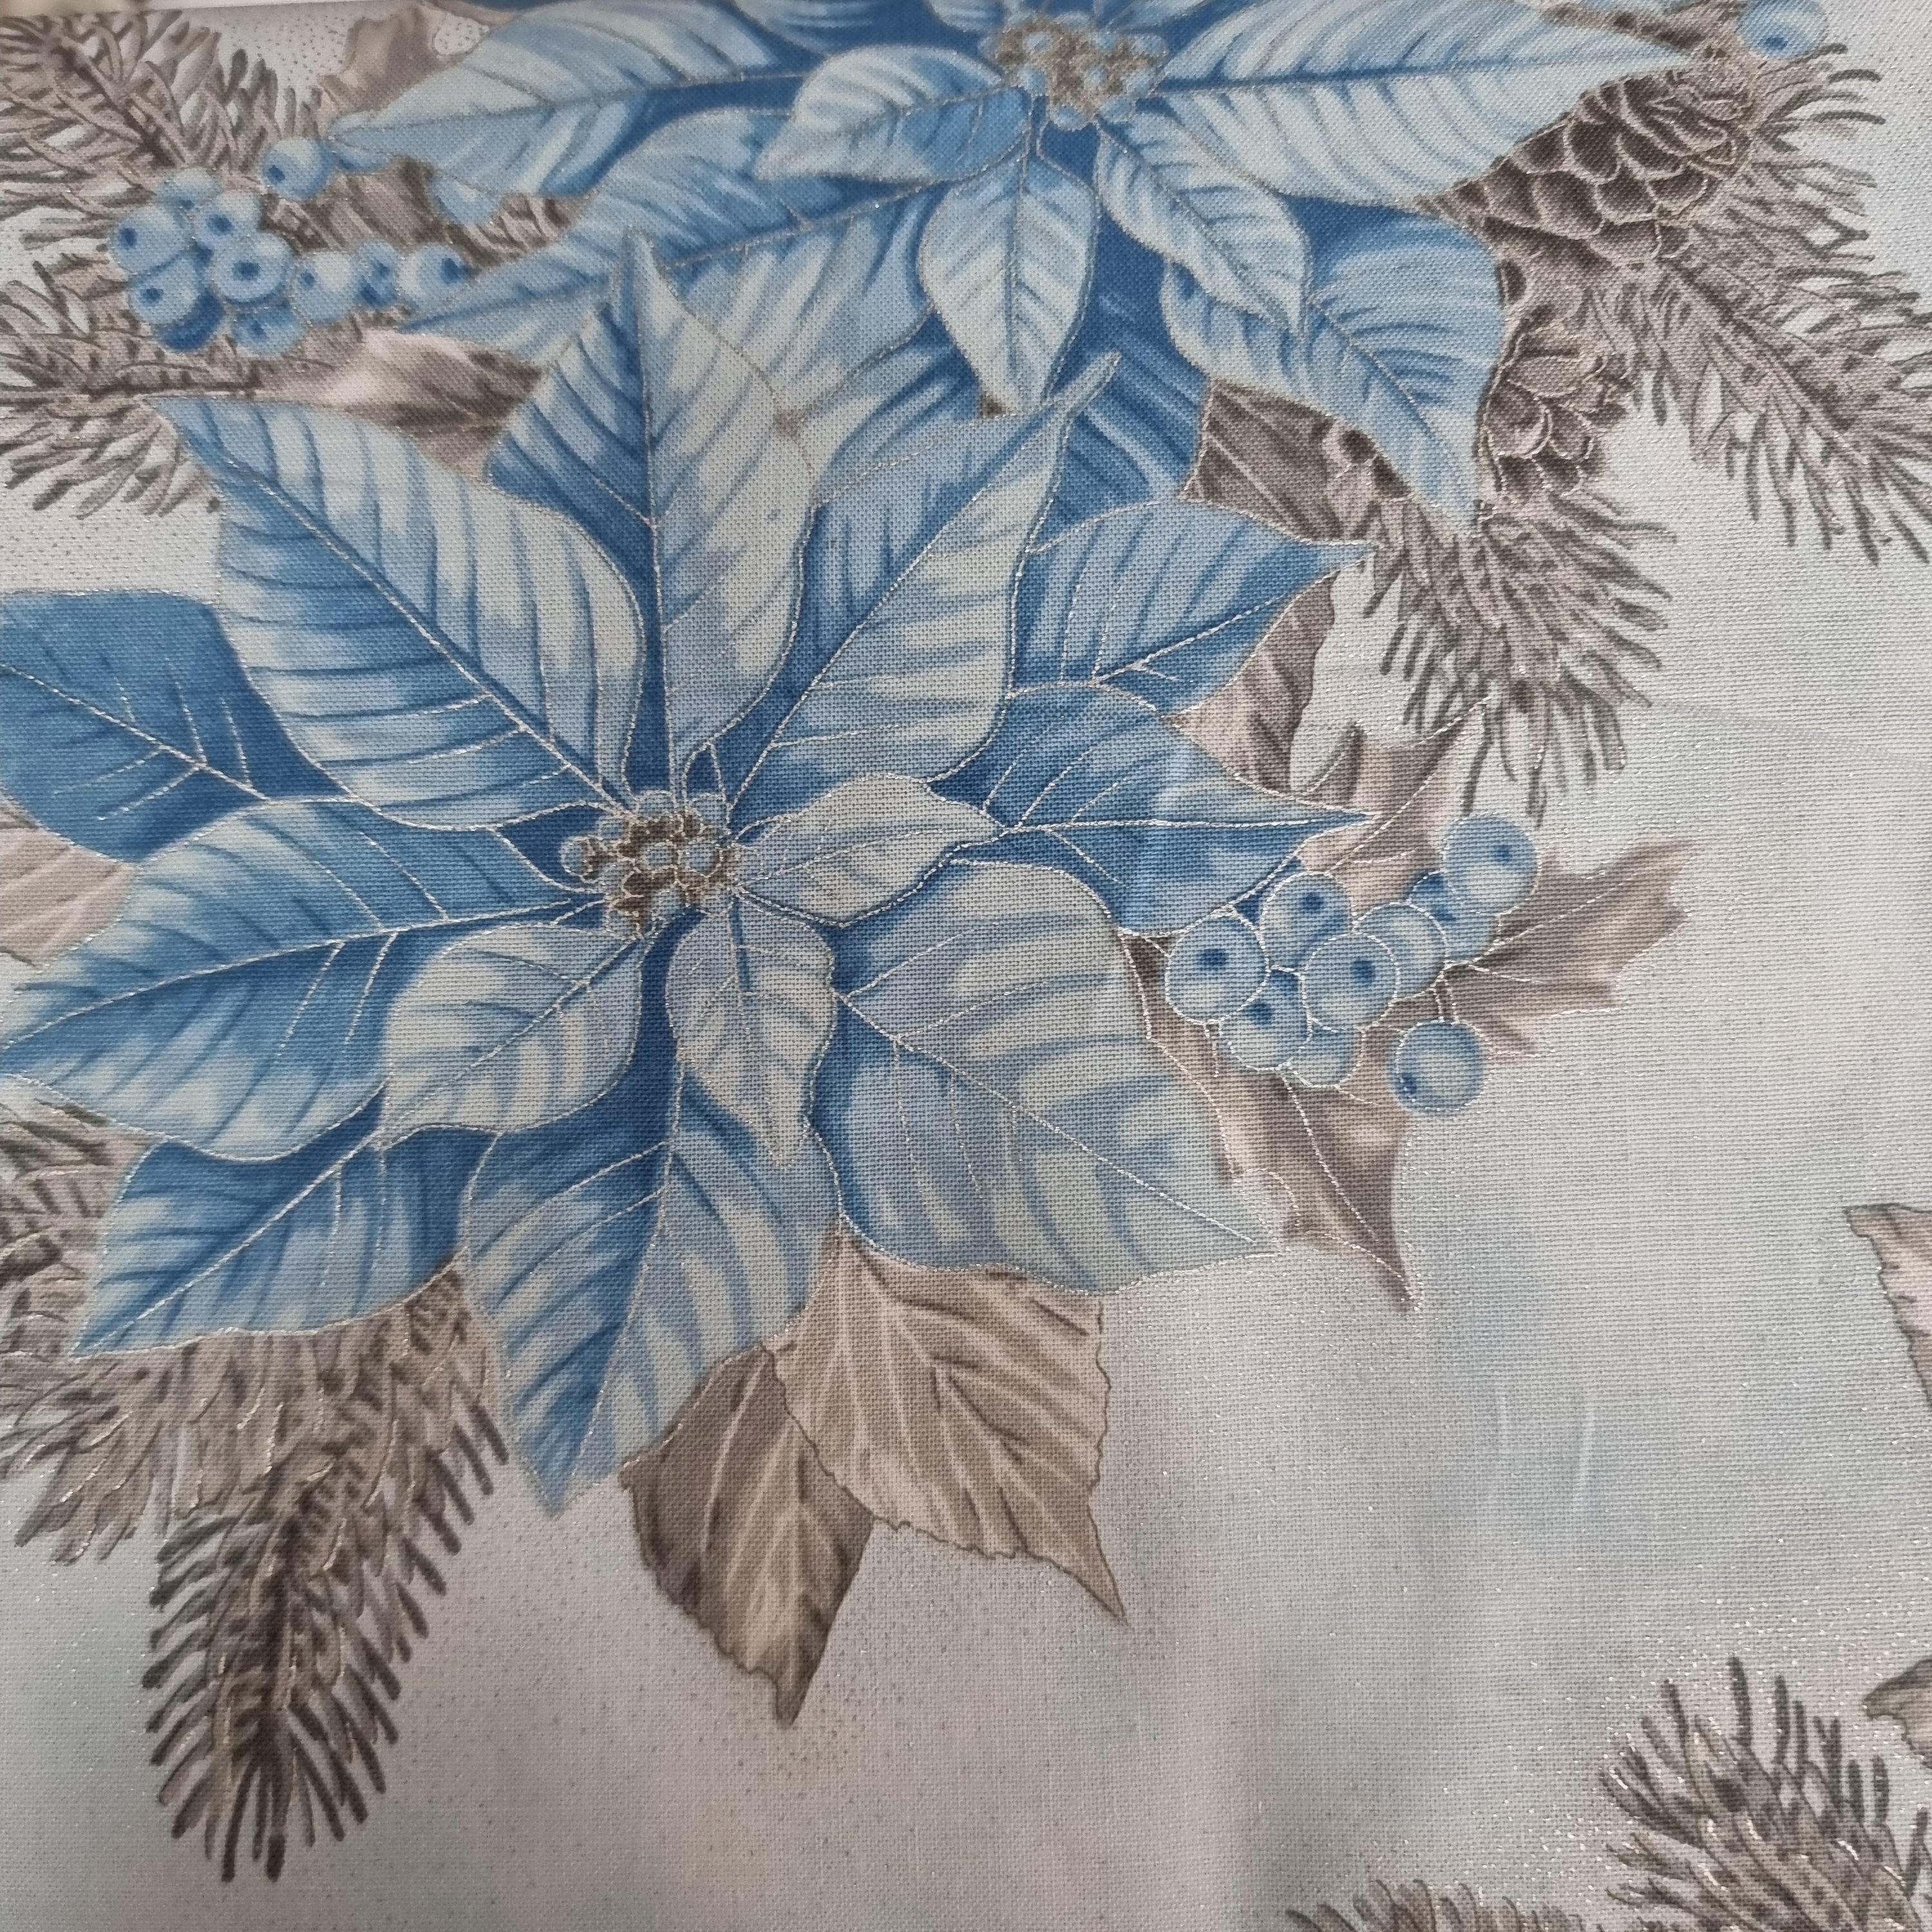 Holiday Flourish - Poinsettia -Blue